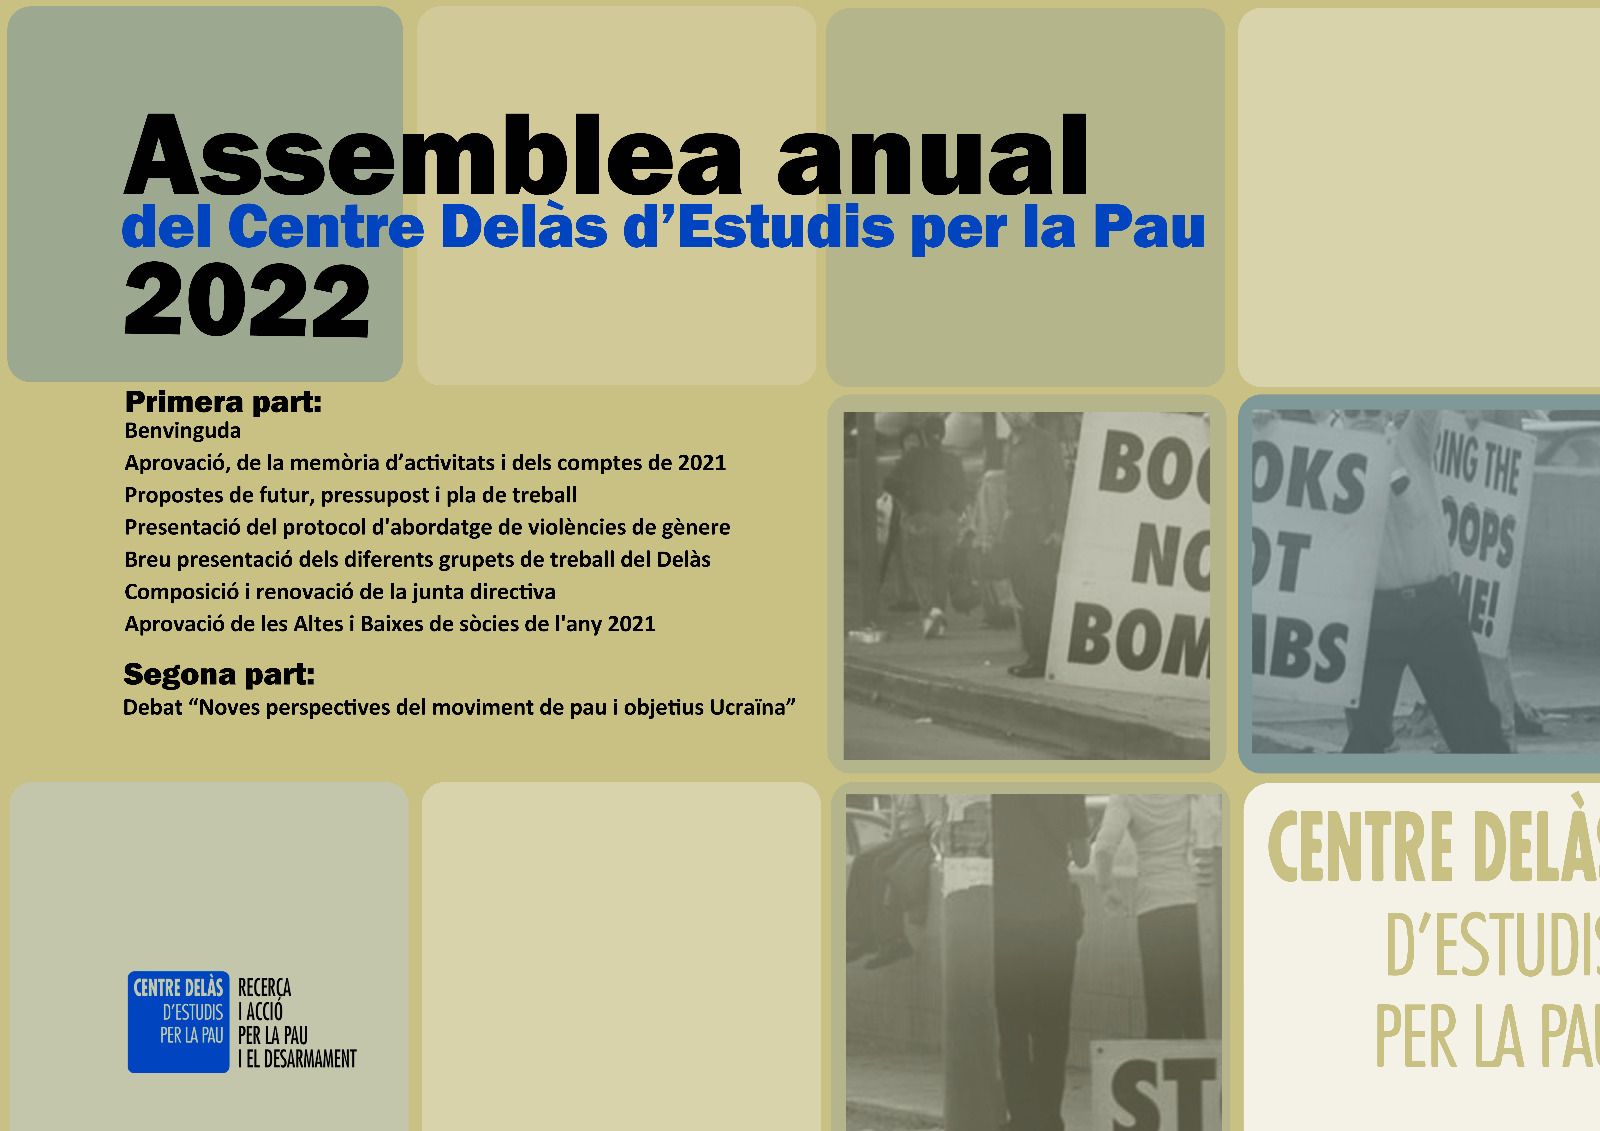  Asamblea Ordinaria Anual 2022 del Centre Delàs 